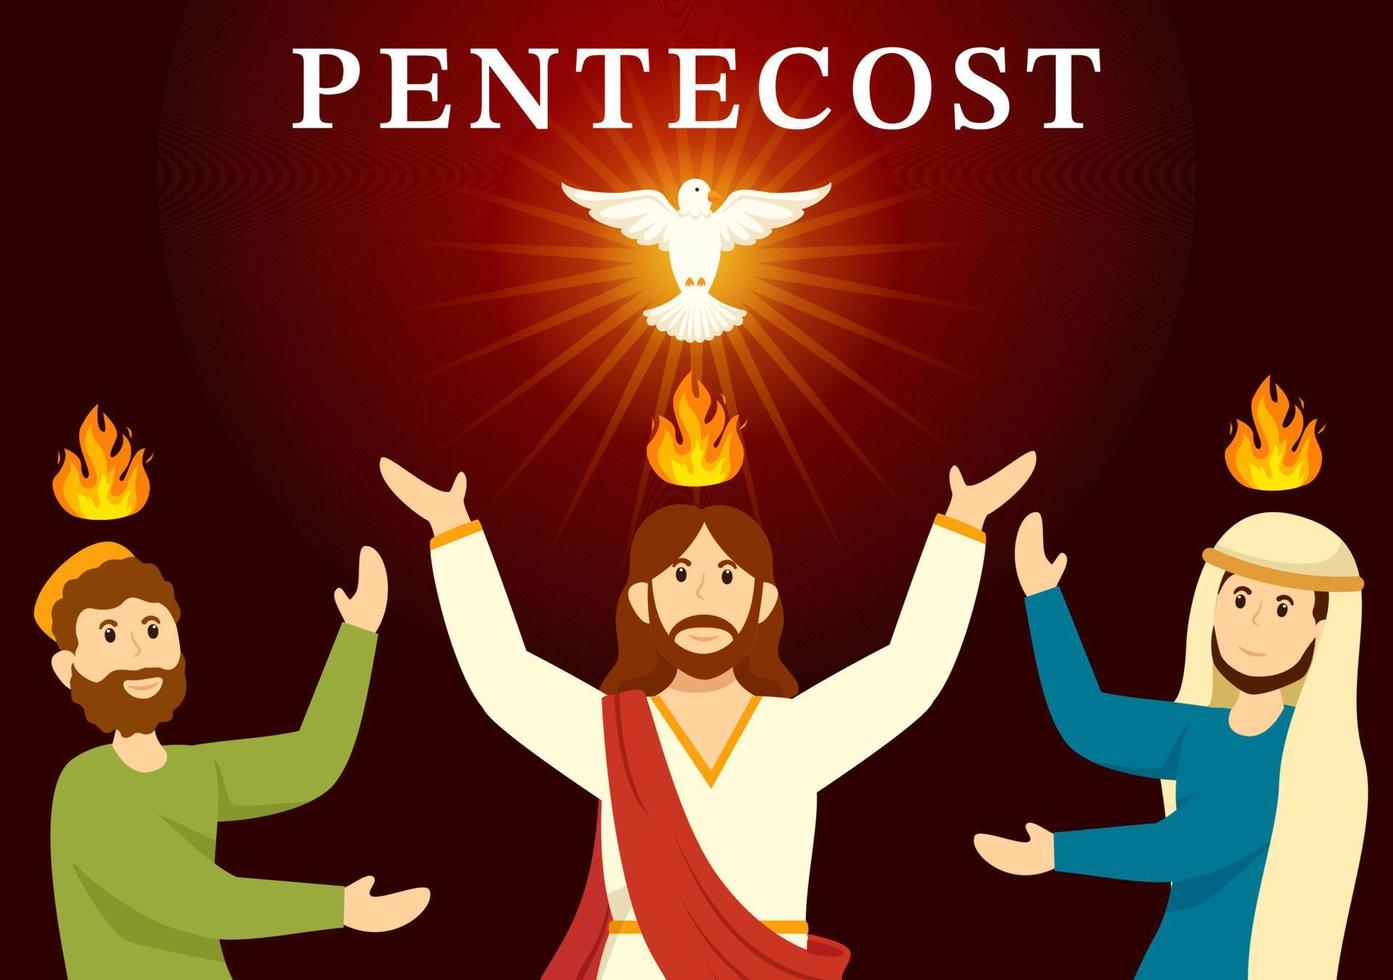 Pentecostés domingo ilustración con fuego y santo espíritu paloma en católicos o cristianos religioso cultura fiesta plano dibujos animados mano dibujado plantillas vector